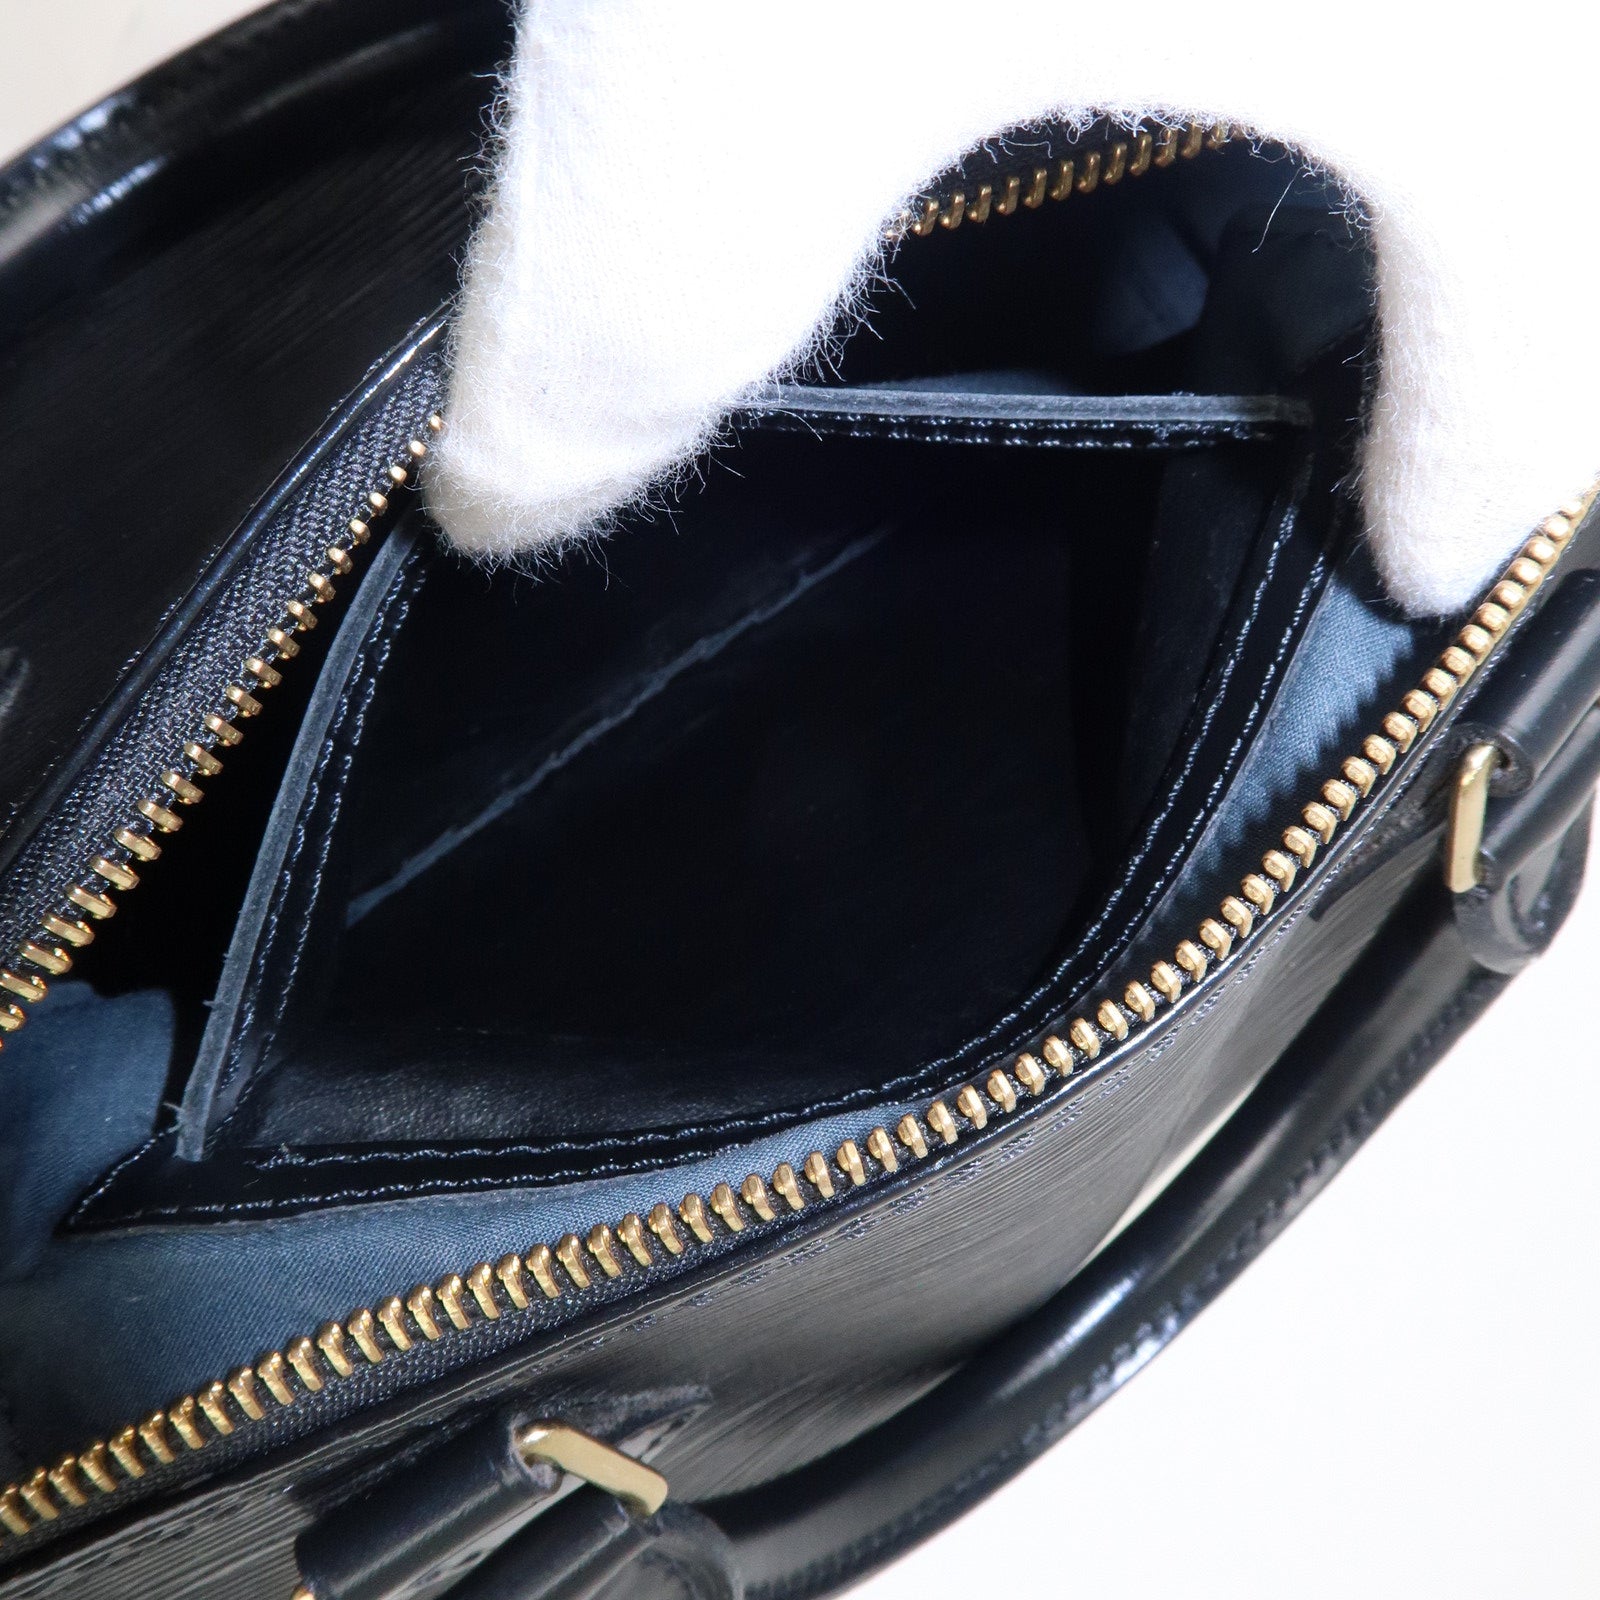 LOUIS-VUITTON Epi Speedy 30 Handbag Noir M59022 VL0911 Black Authentic